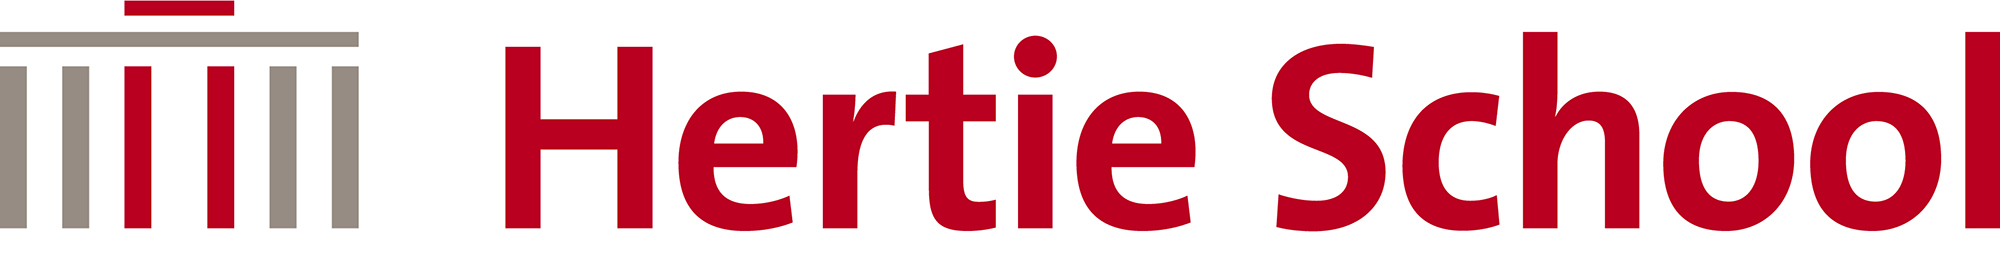 Logo: Hertie School